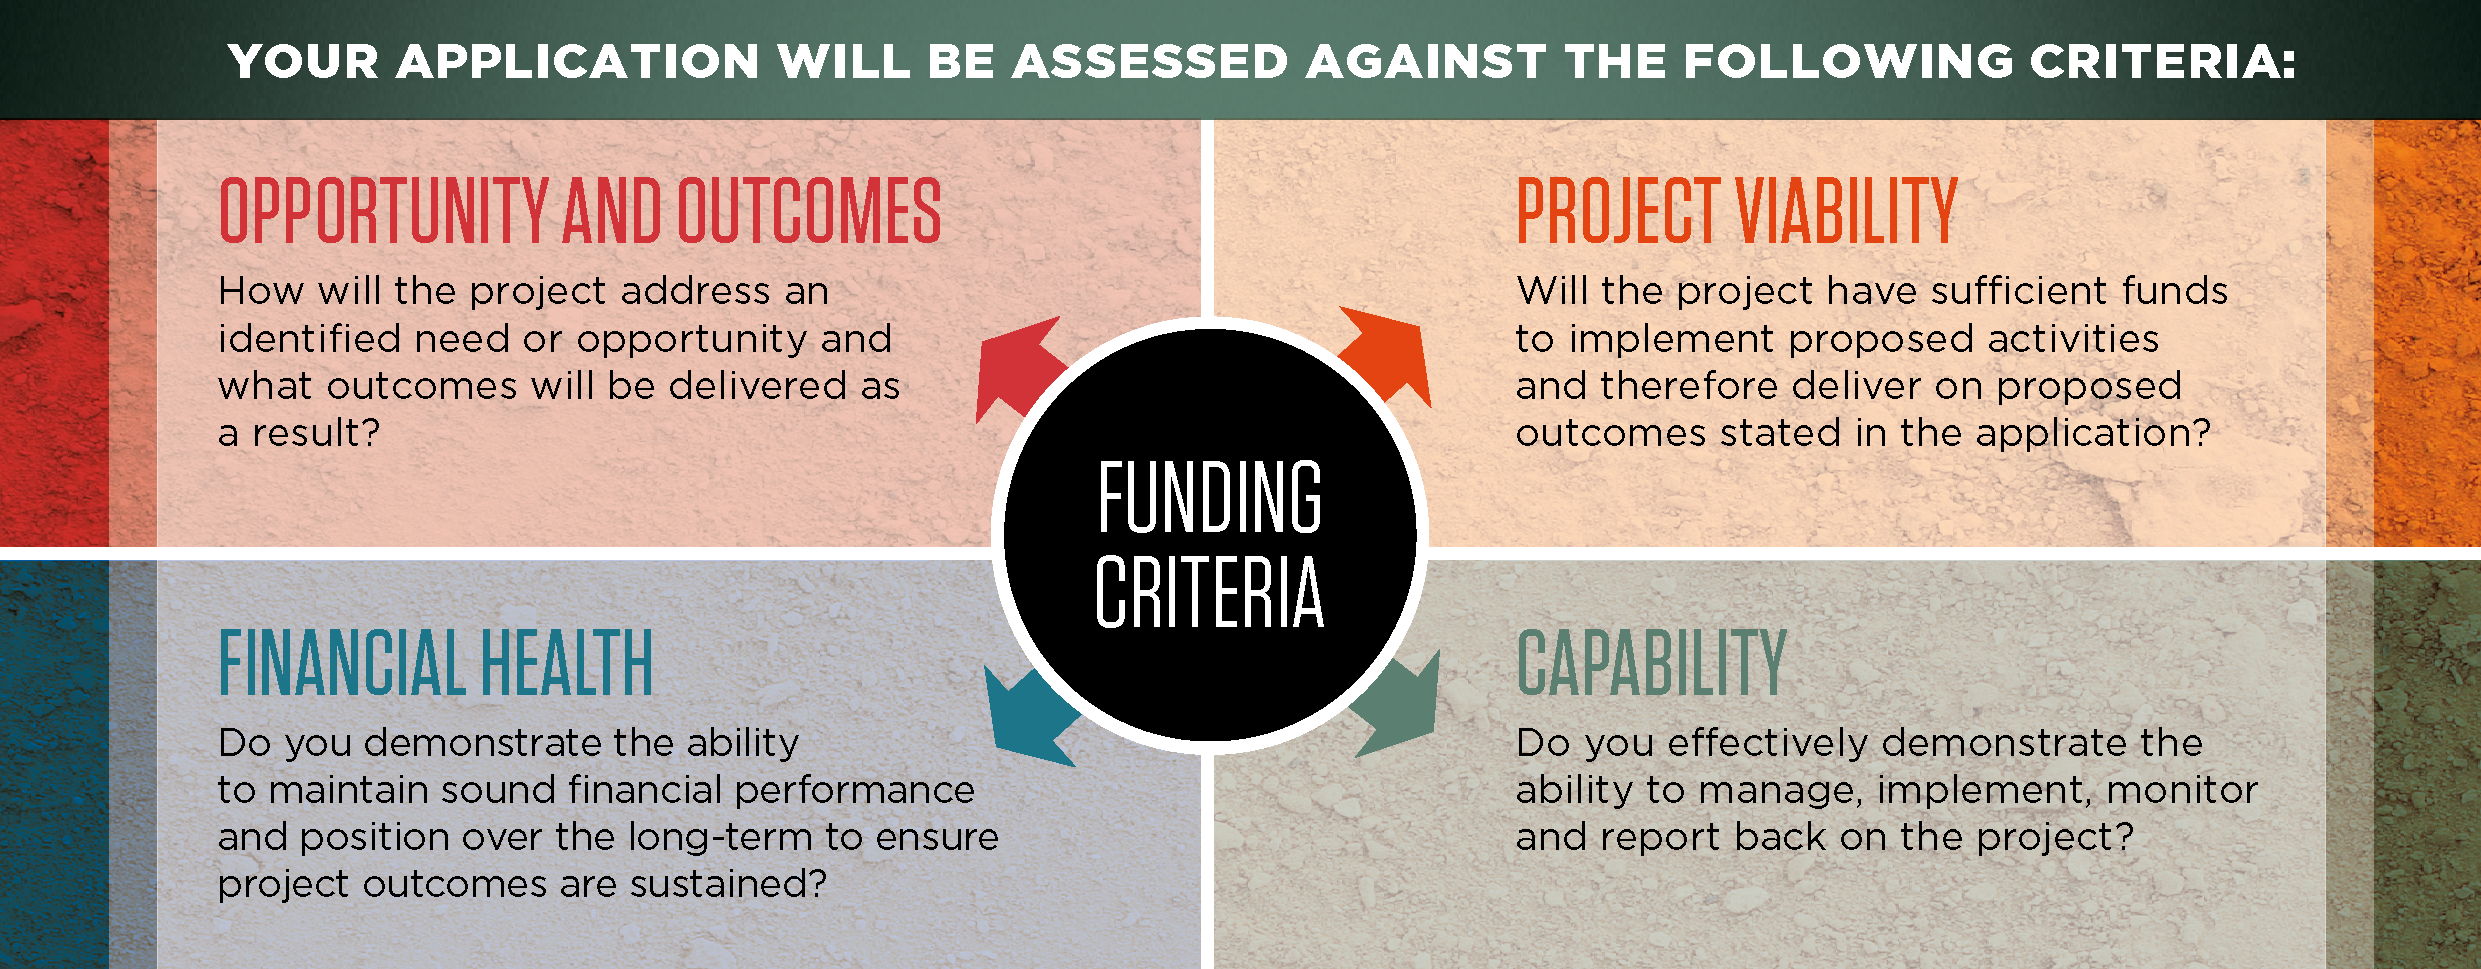 Funding criteria